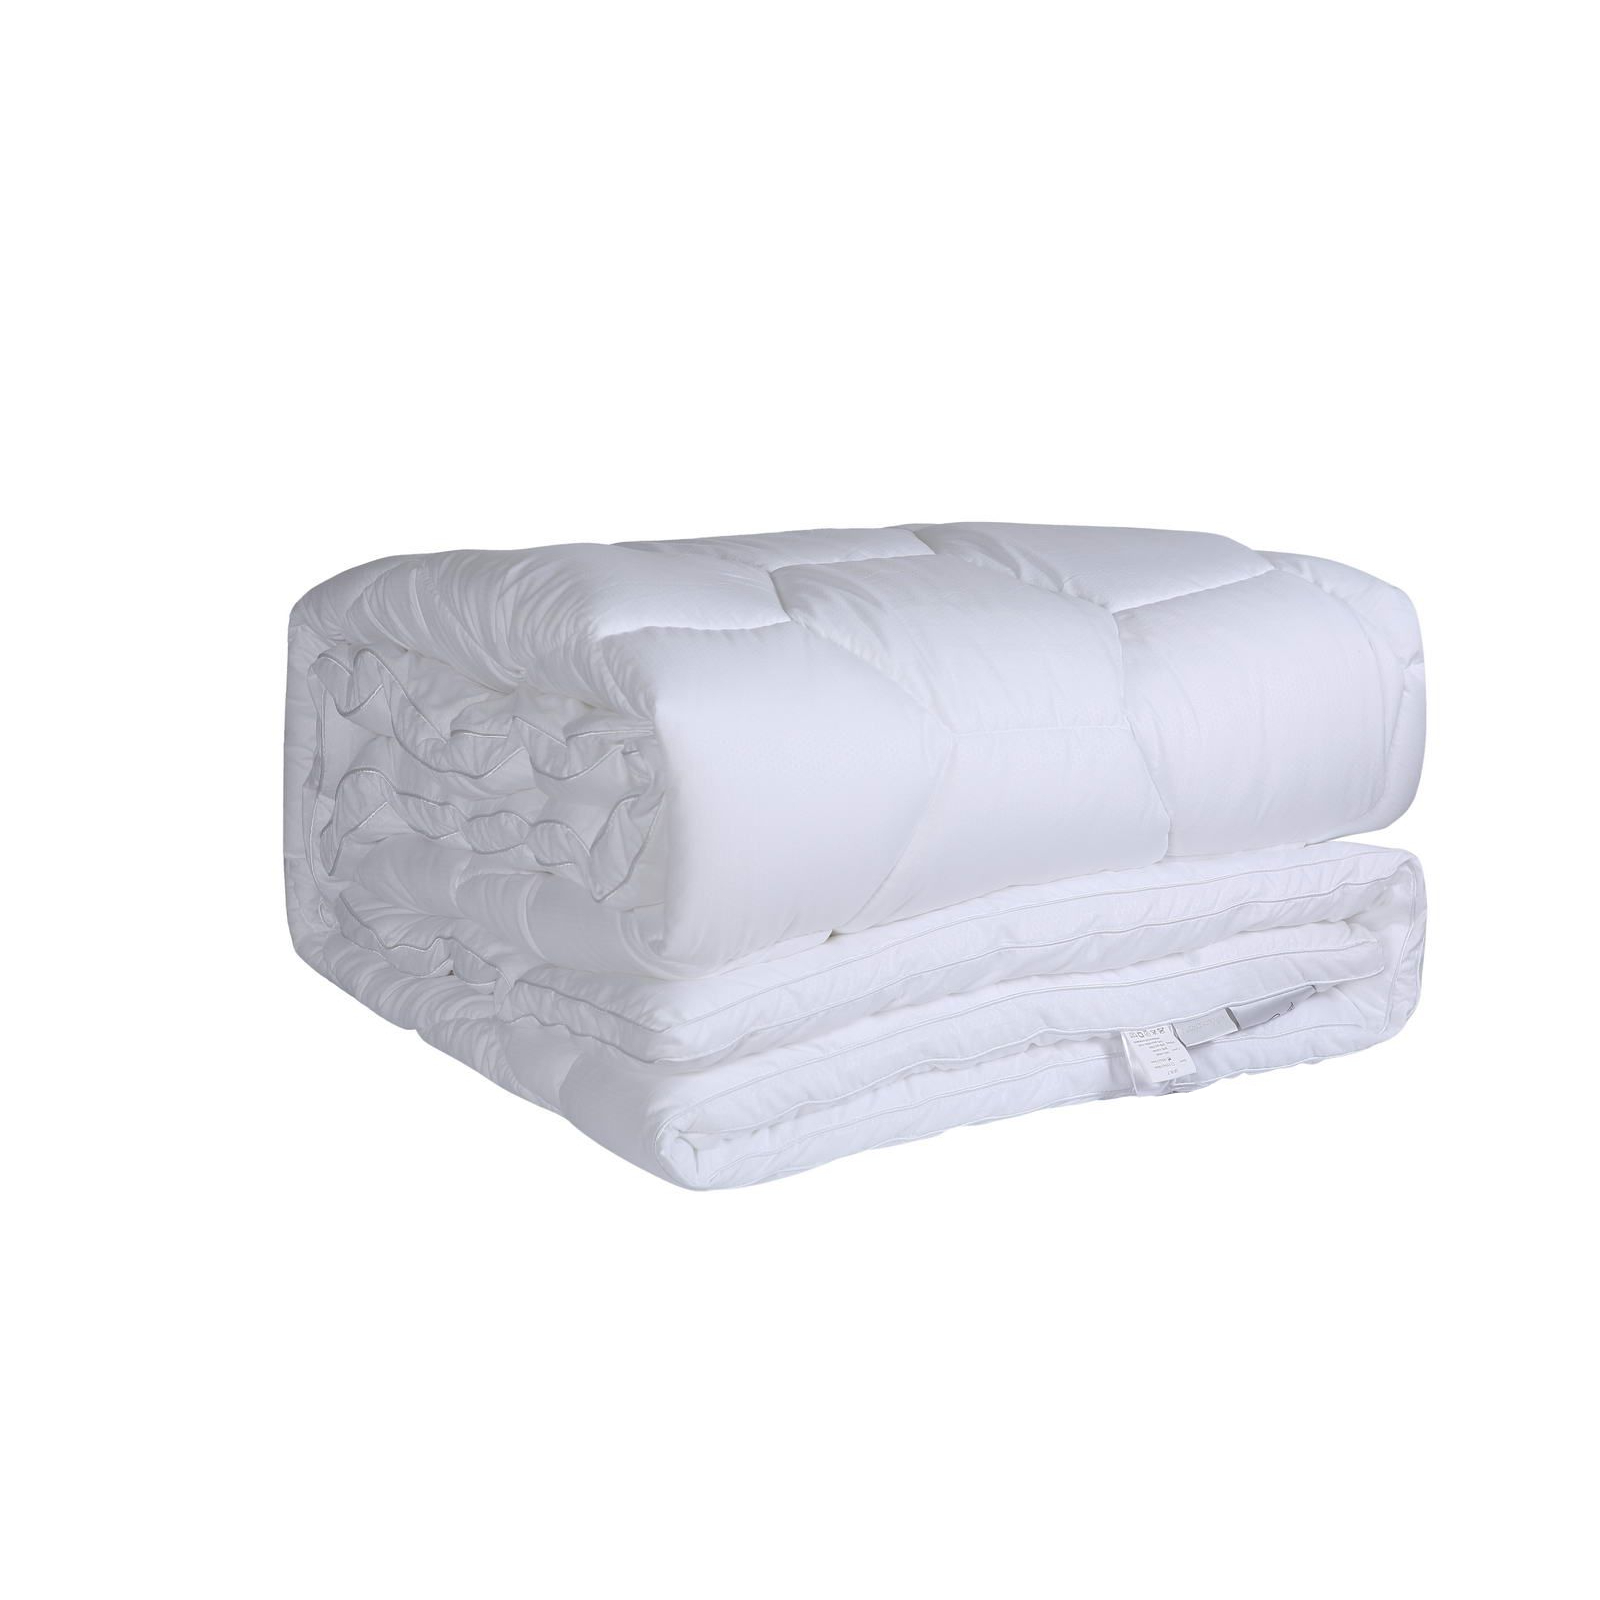 Одеяло Sofi De Marko Antibacterial 195х215 см soft silver набор antibacterial cotton towels полотенца для лица и тела 3 шт размеры 30х50 см 50х90 см 70х140 см альпийский снег белый